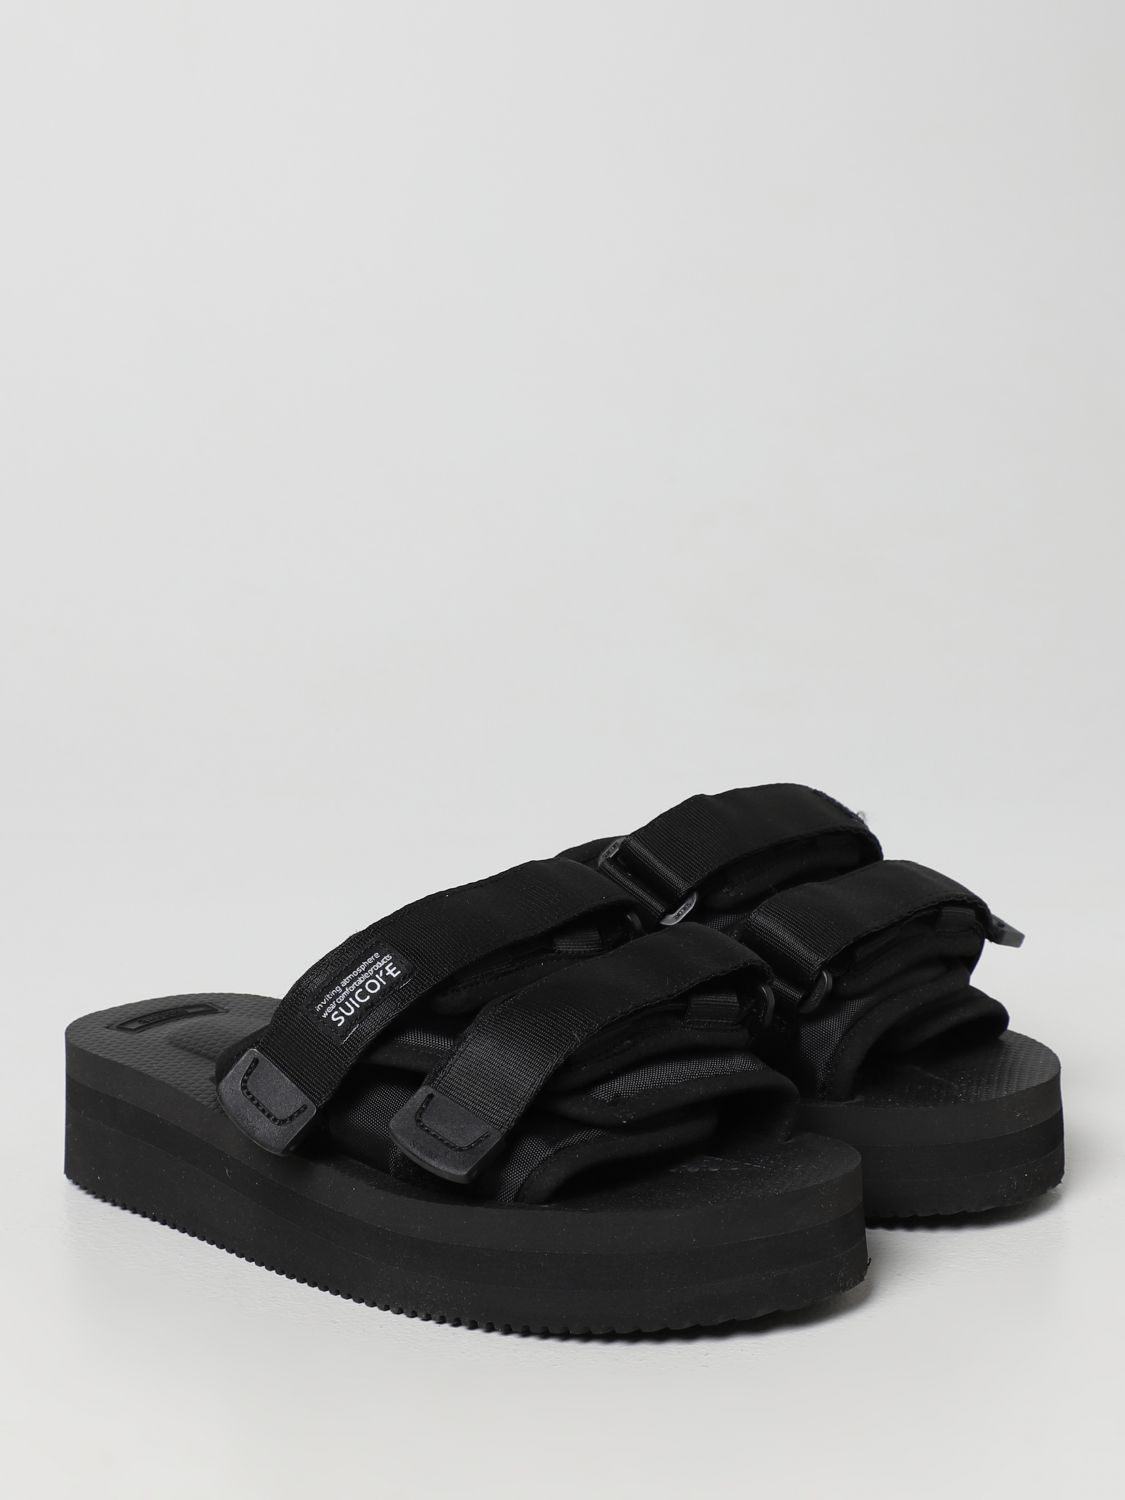 Sandals Suicoke: Suicoke sandals for men black 2